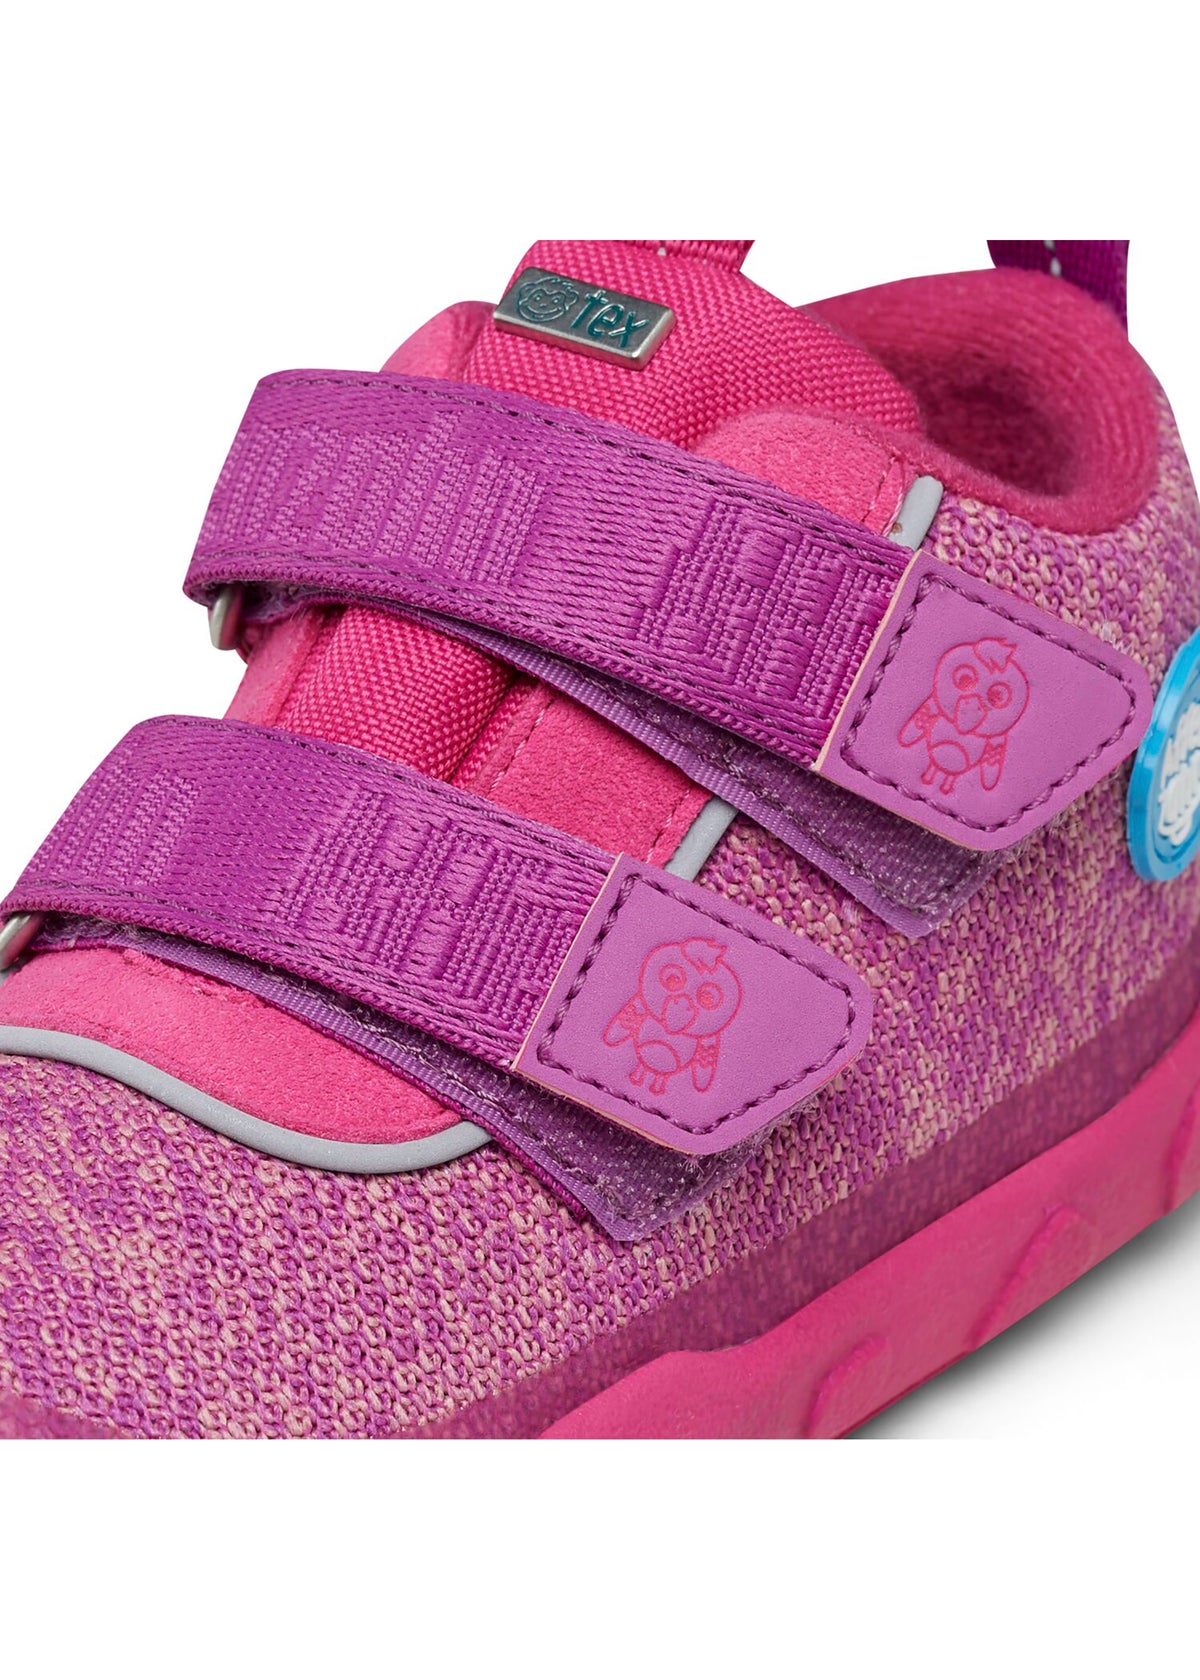 Barfotaskor för barn - Happy Knit Flamingo, mellansäsongsskor med TEX-membran - rosa